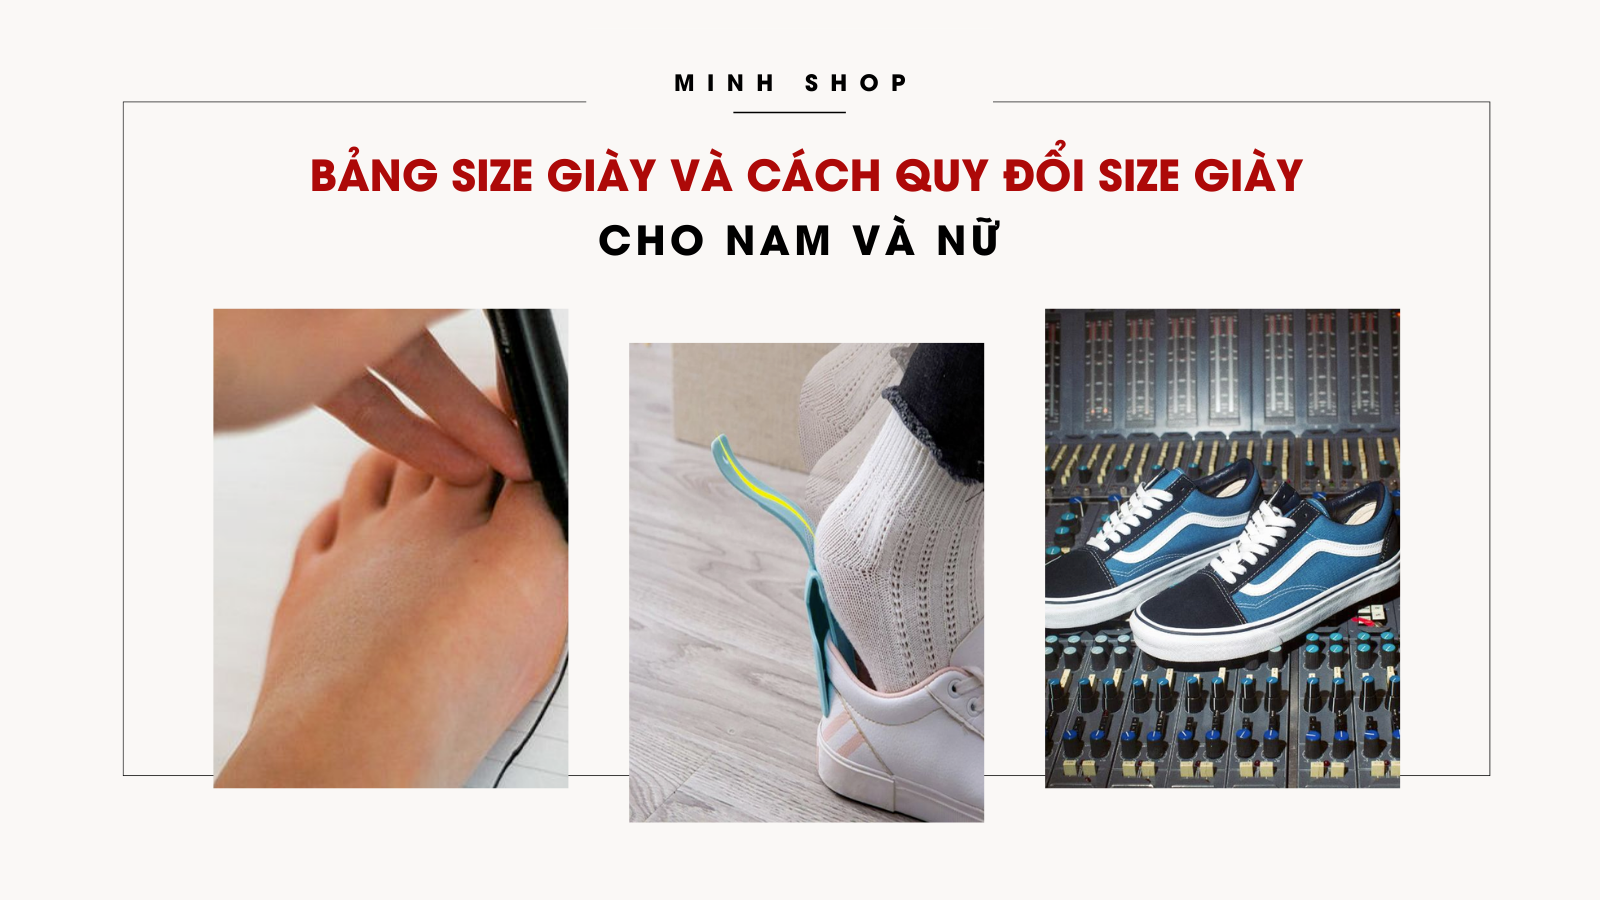 Minhshop.vn - CHỌN SIZE CHUẨN Bảng size giày và cách quy đổi size giày  cho nam và nữ để không phải đổi trả